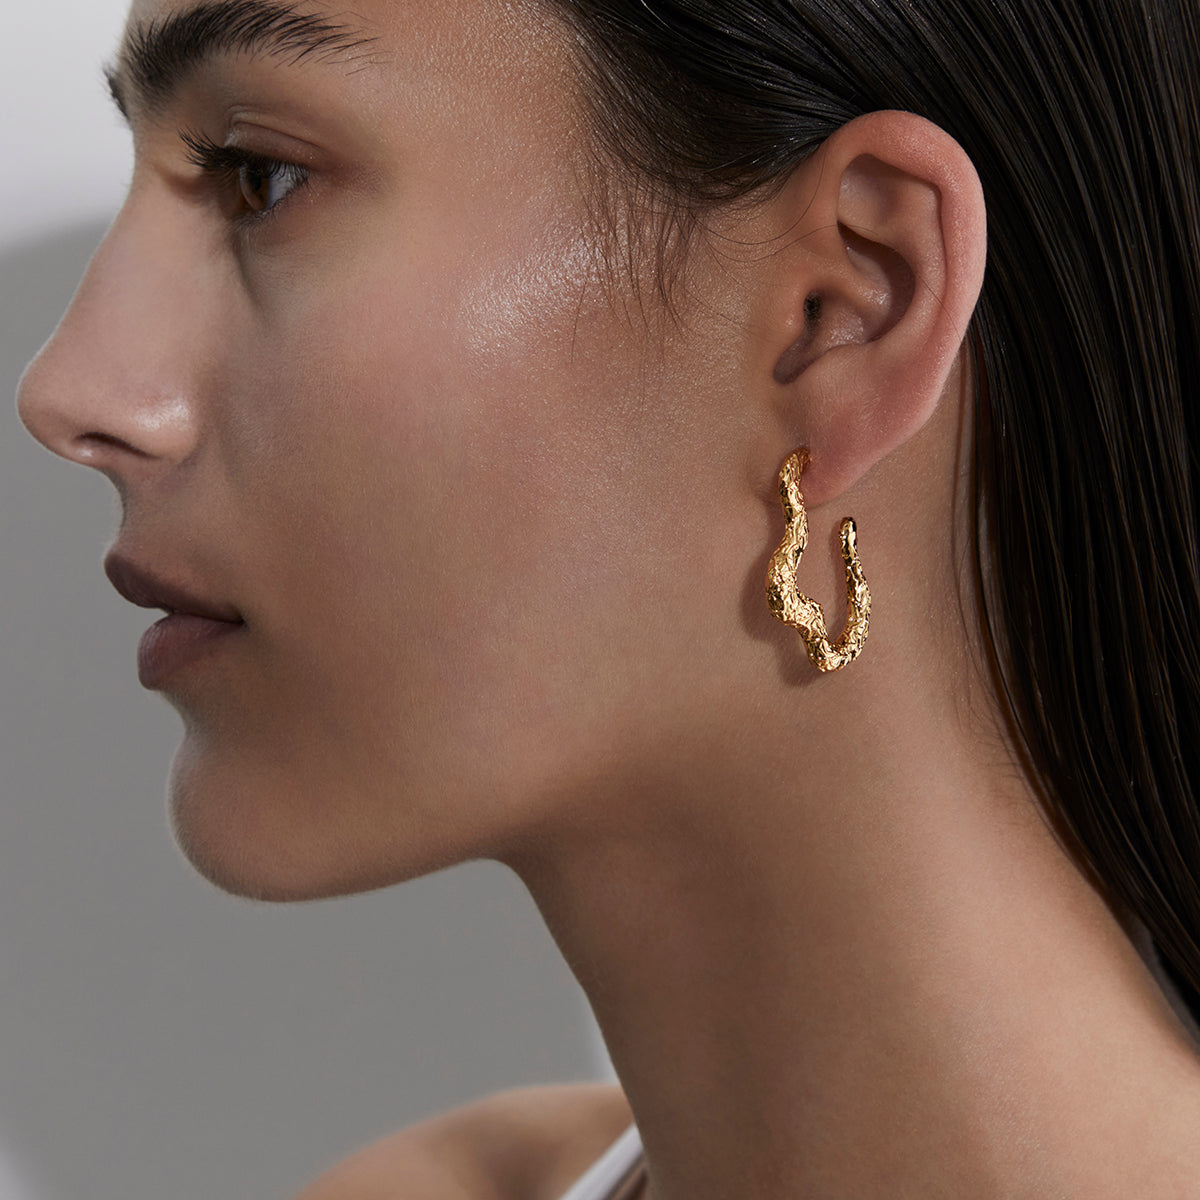 Russo-earrings-Amber-Sceats-1.jpg